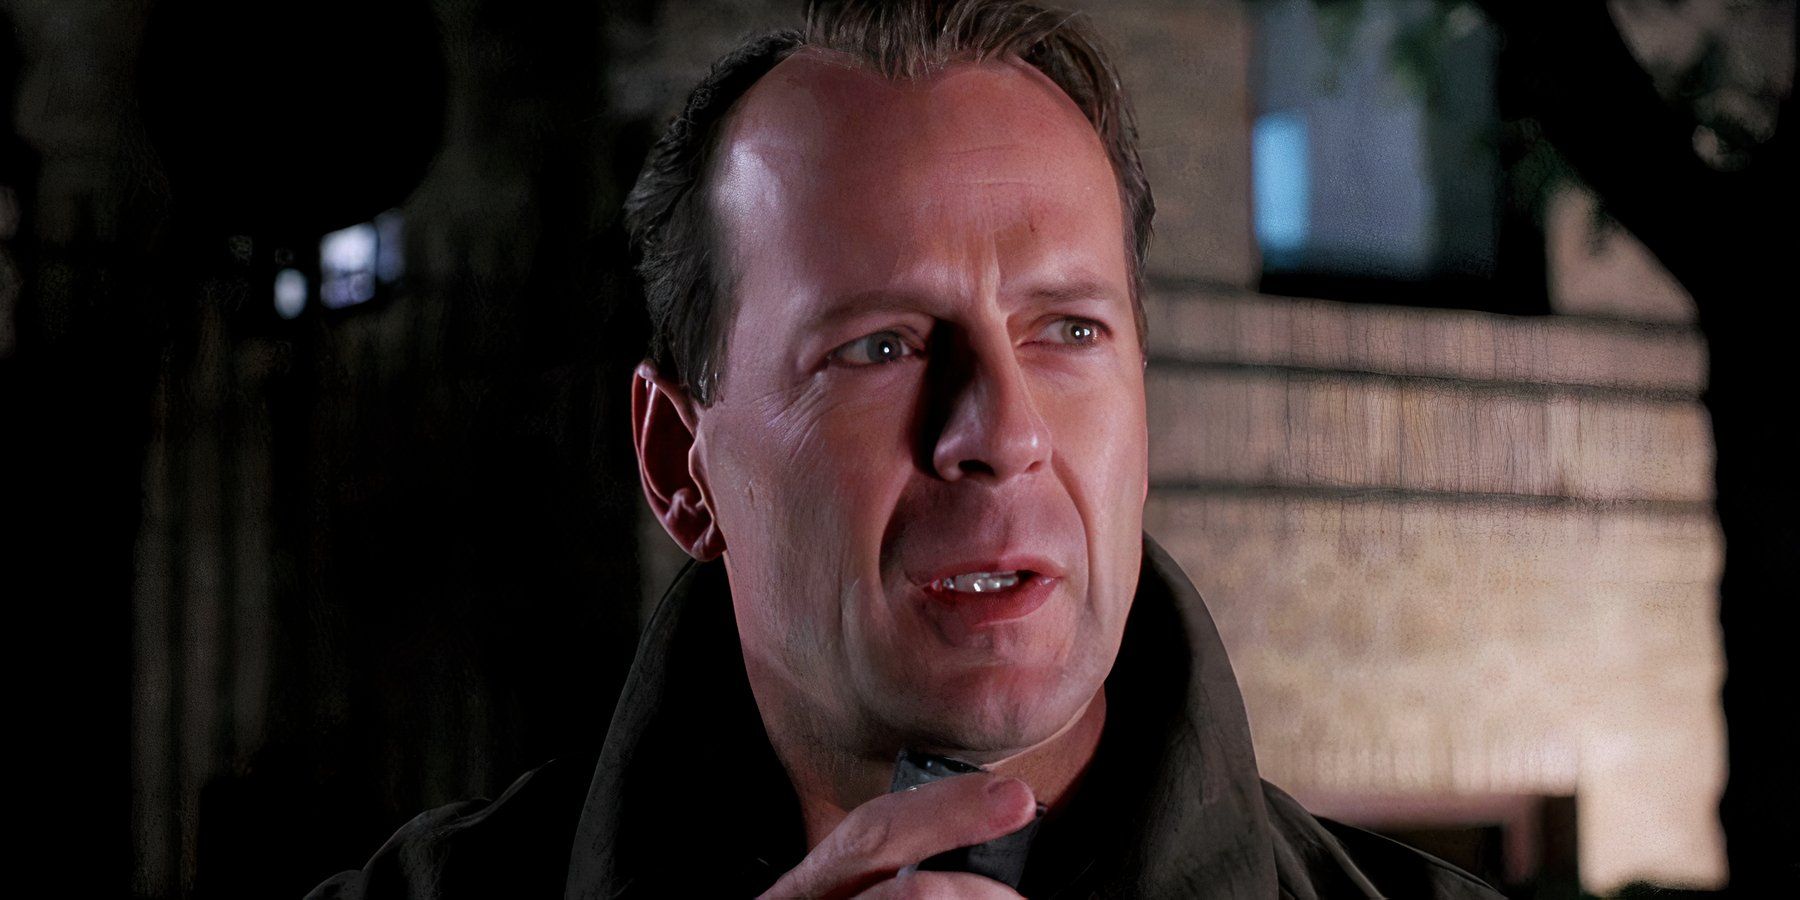 "Él te pondría a prueba": M. Night Shyamalan detalla una tensa conversación con Bruce Willis durante el rodaje del thriller nominado al Oscar de 1999